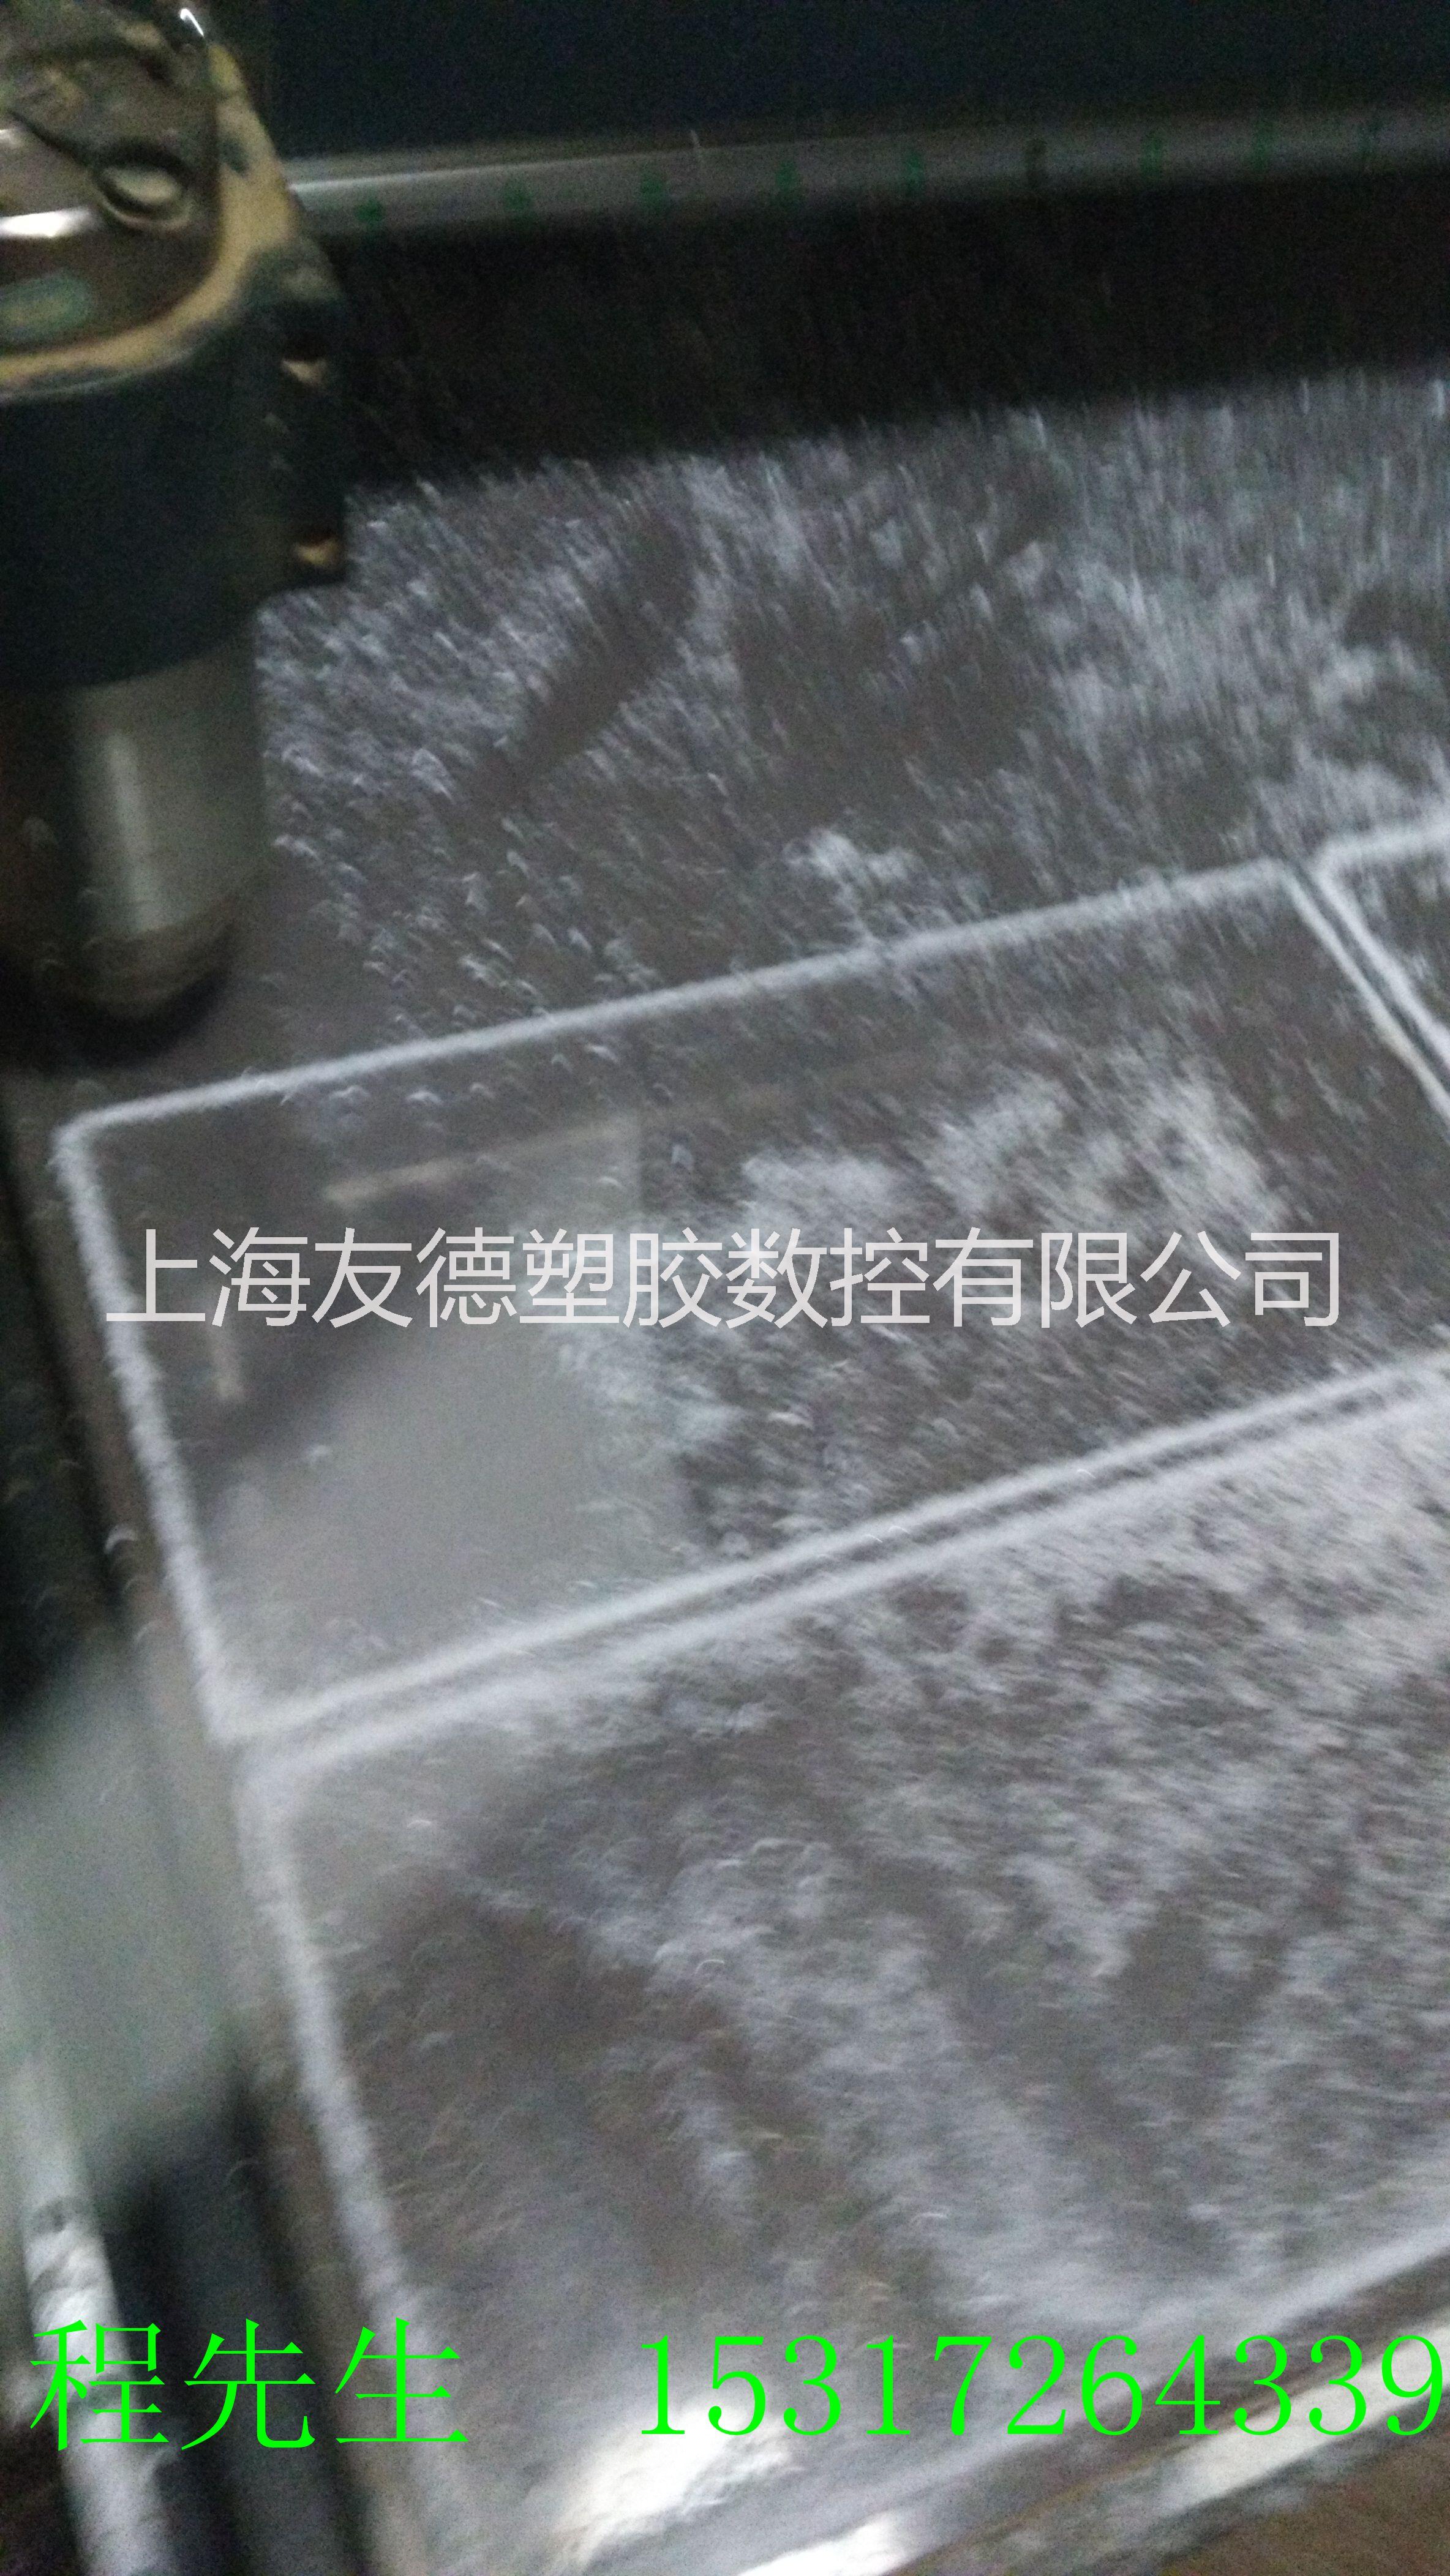 上海亚克力加工@上海亚克力切割@上海有机玻璃加工图片